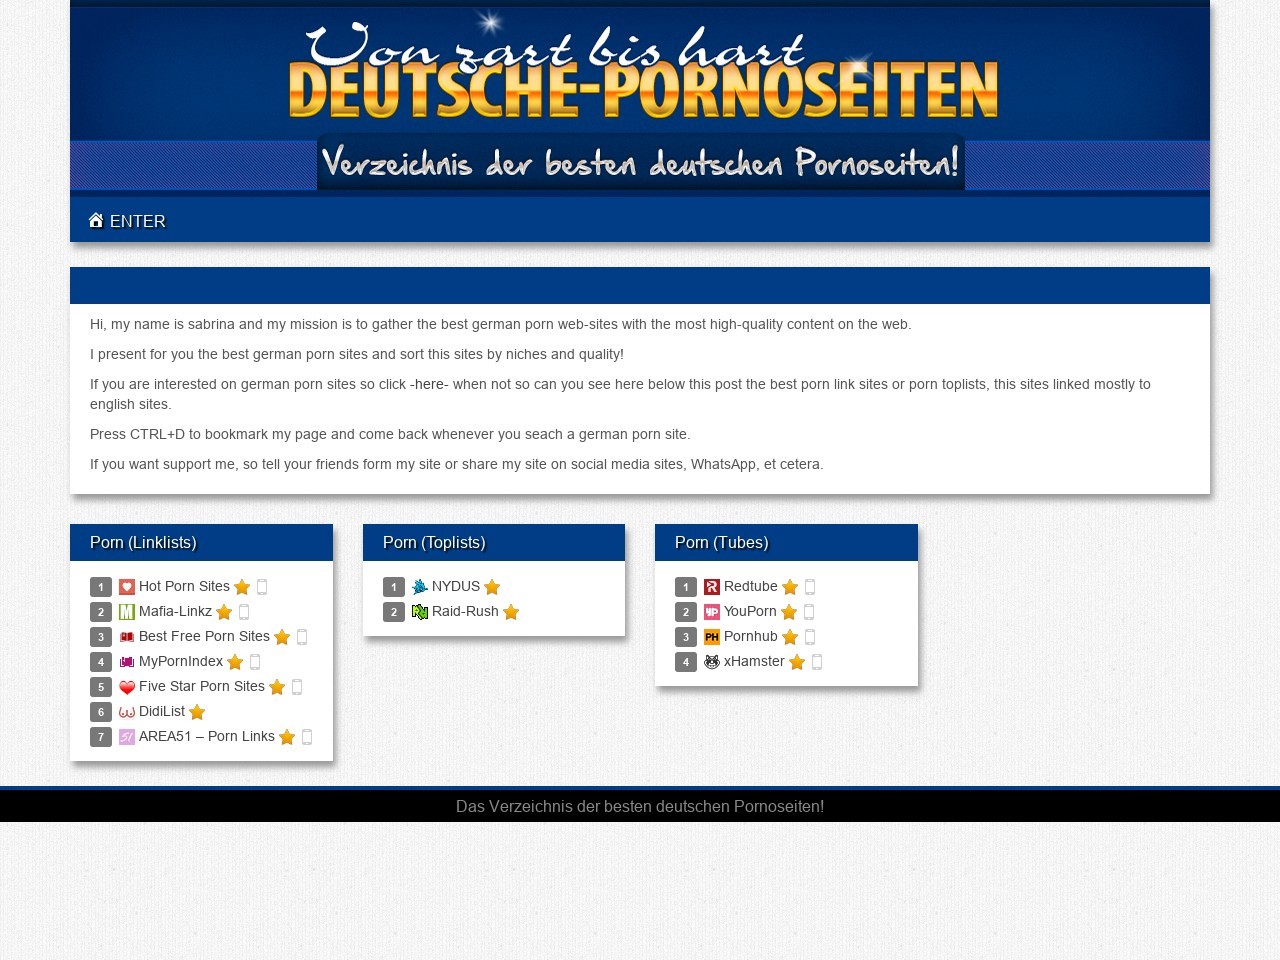 1280px x 960px - German Porn Sites - AdultSpy